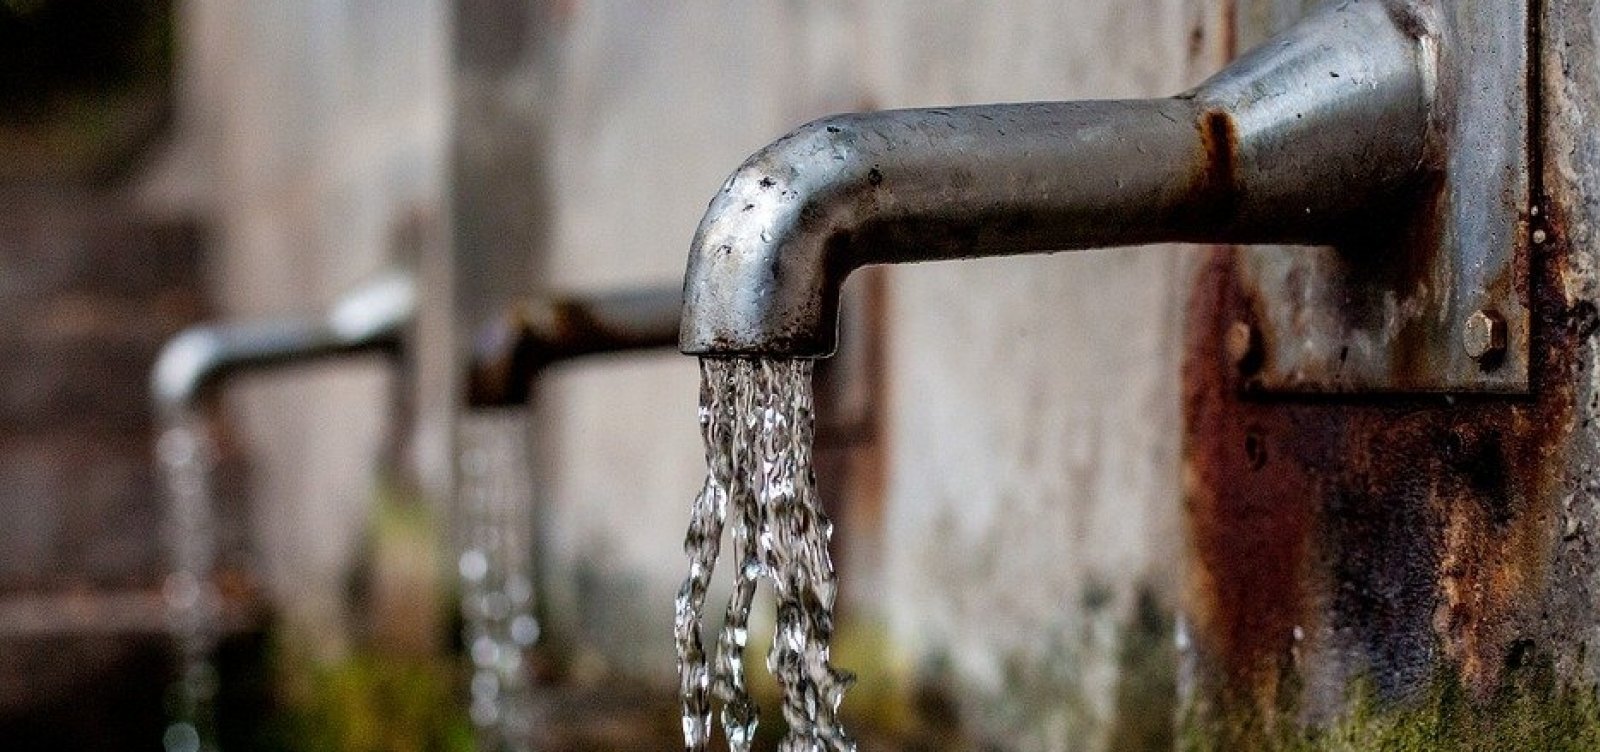 MP apura supostas irregularidades no fornecimento de água em Salvador